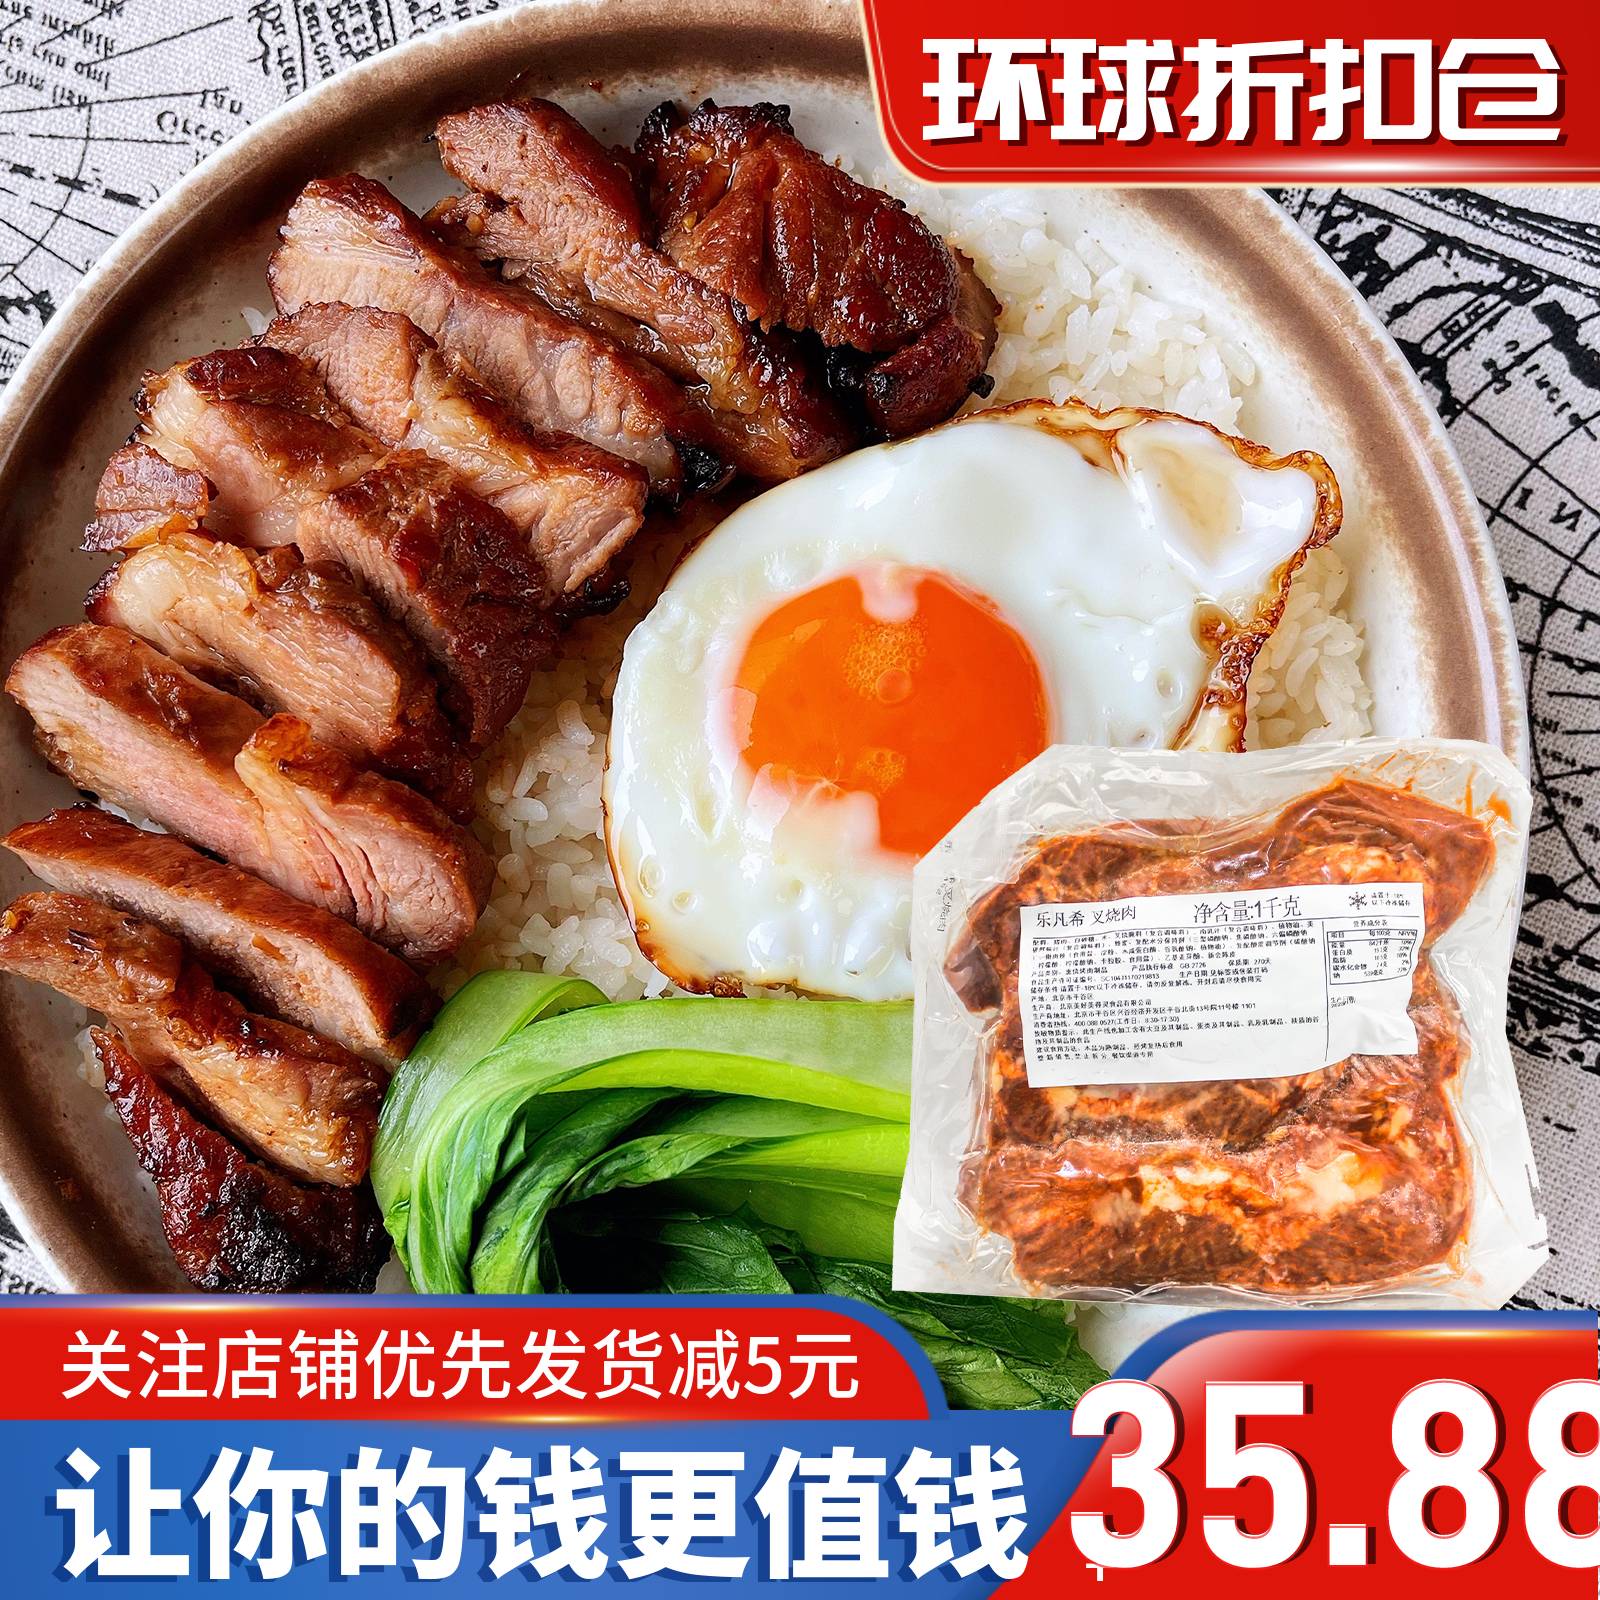 临期清仓乐凡希叉烧肉1000g猪肉香肠烹饪家用早餐炒菜广式腌肉